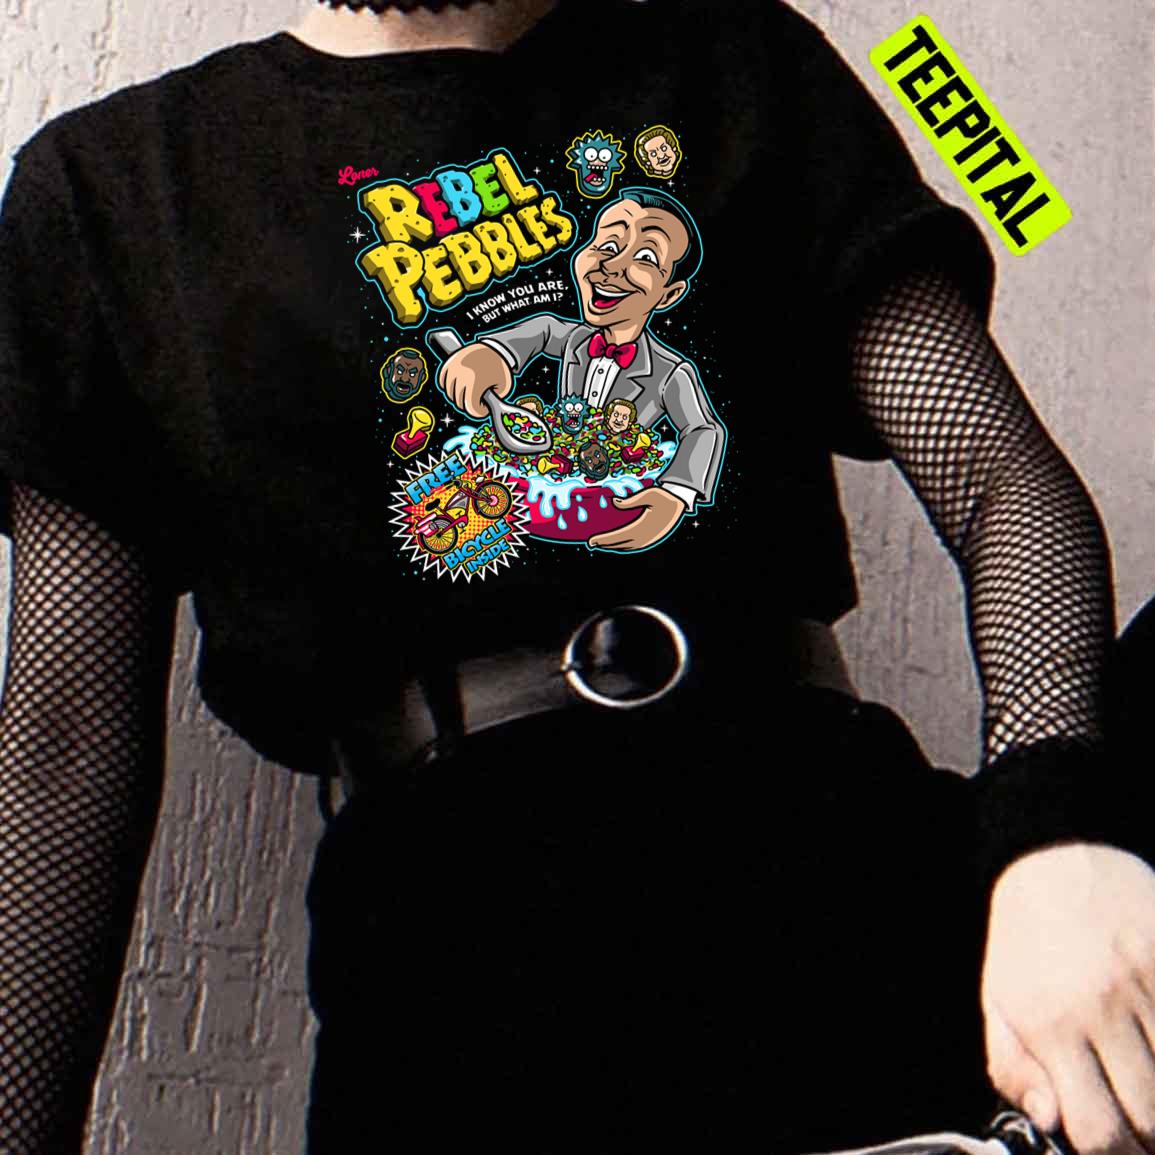 Pee Wee Herman Loner Rebel Pebbles Cereal Unisex T-Shirt